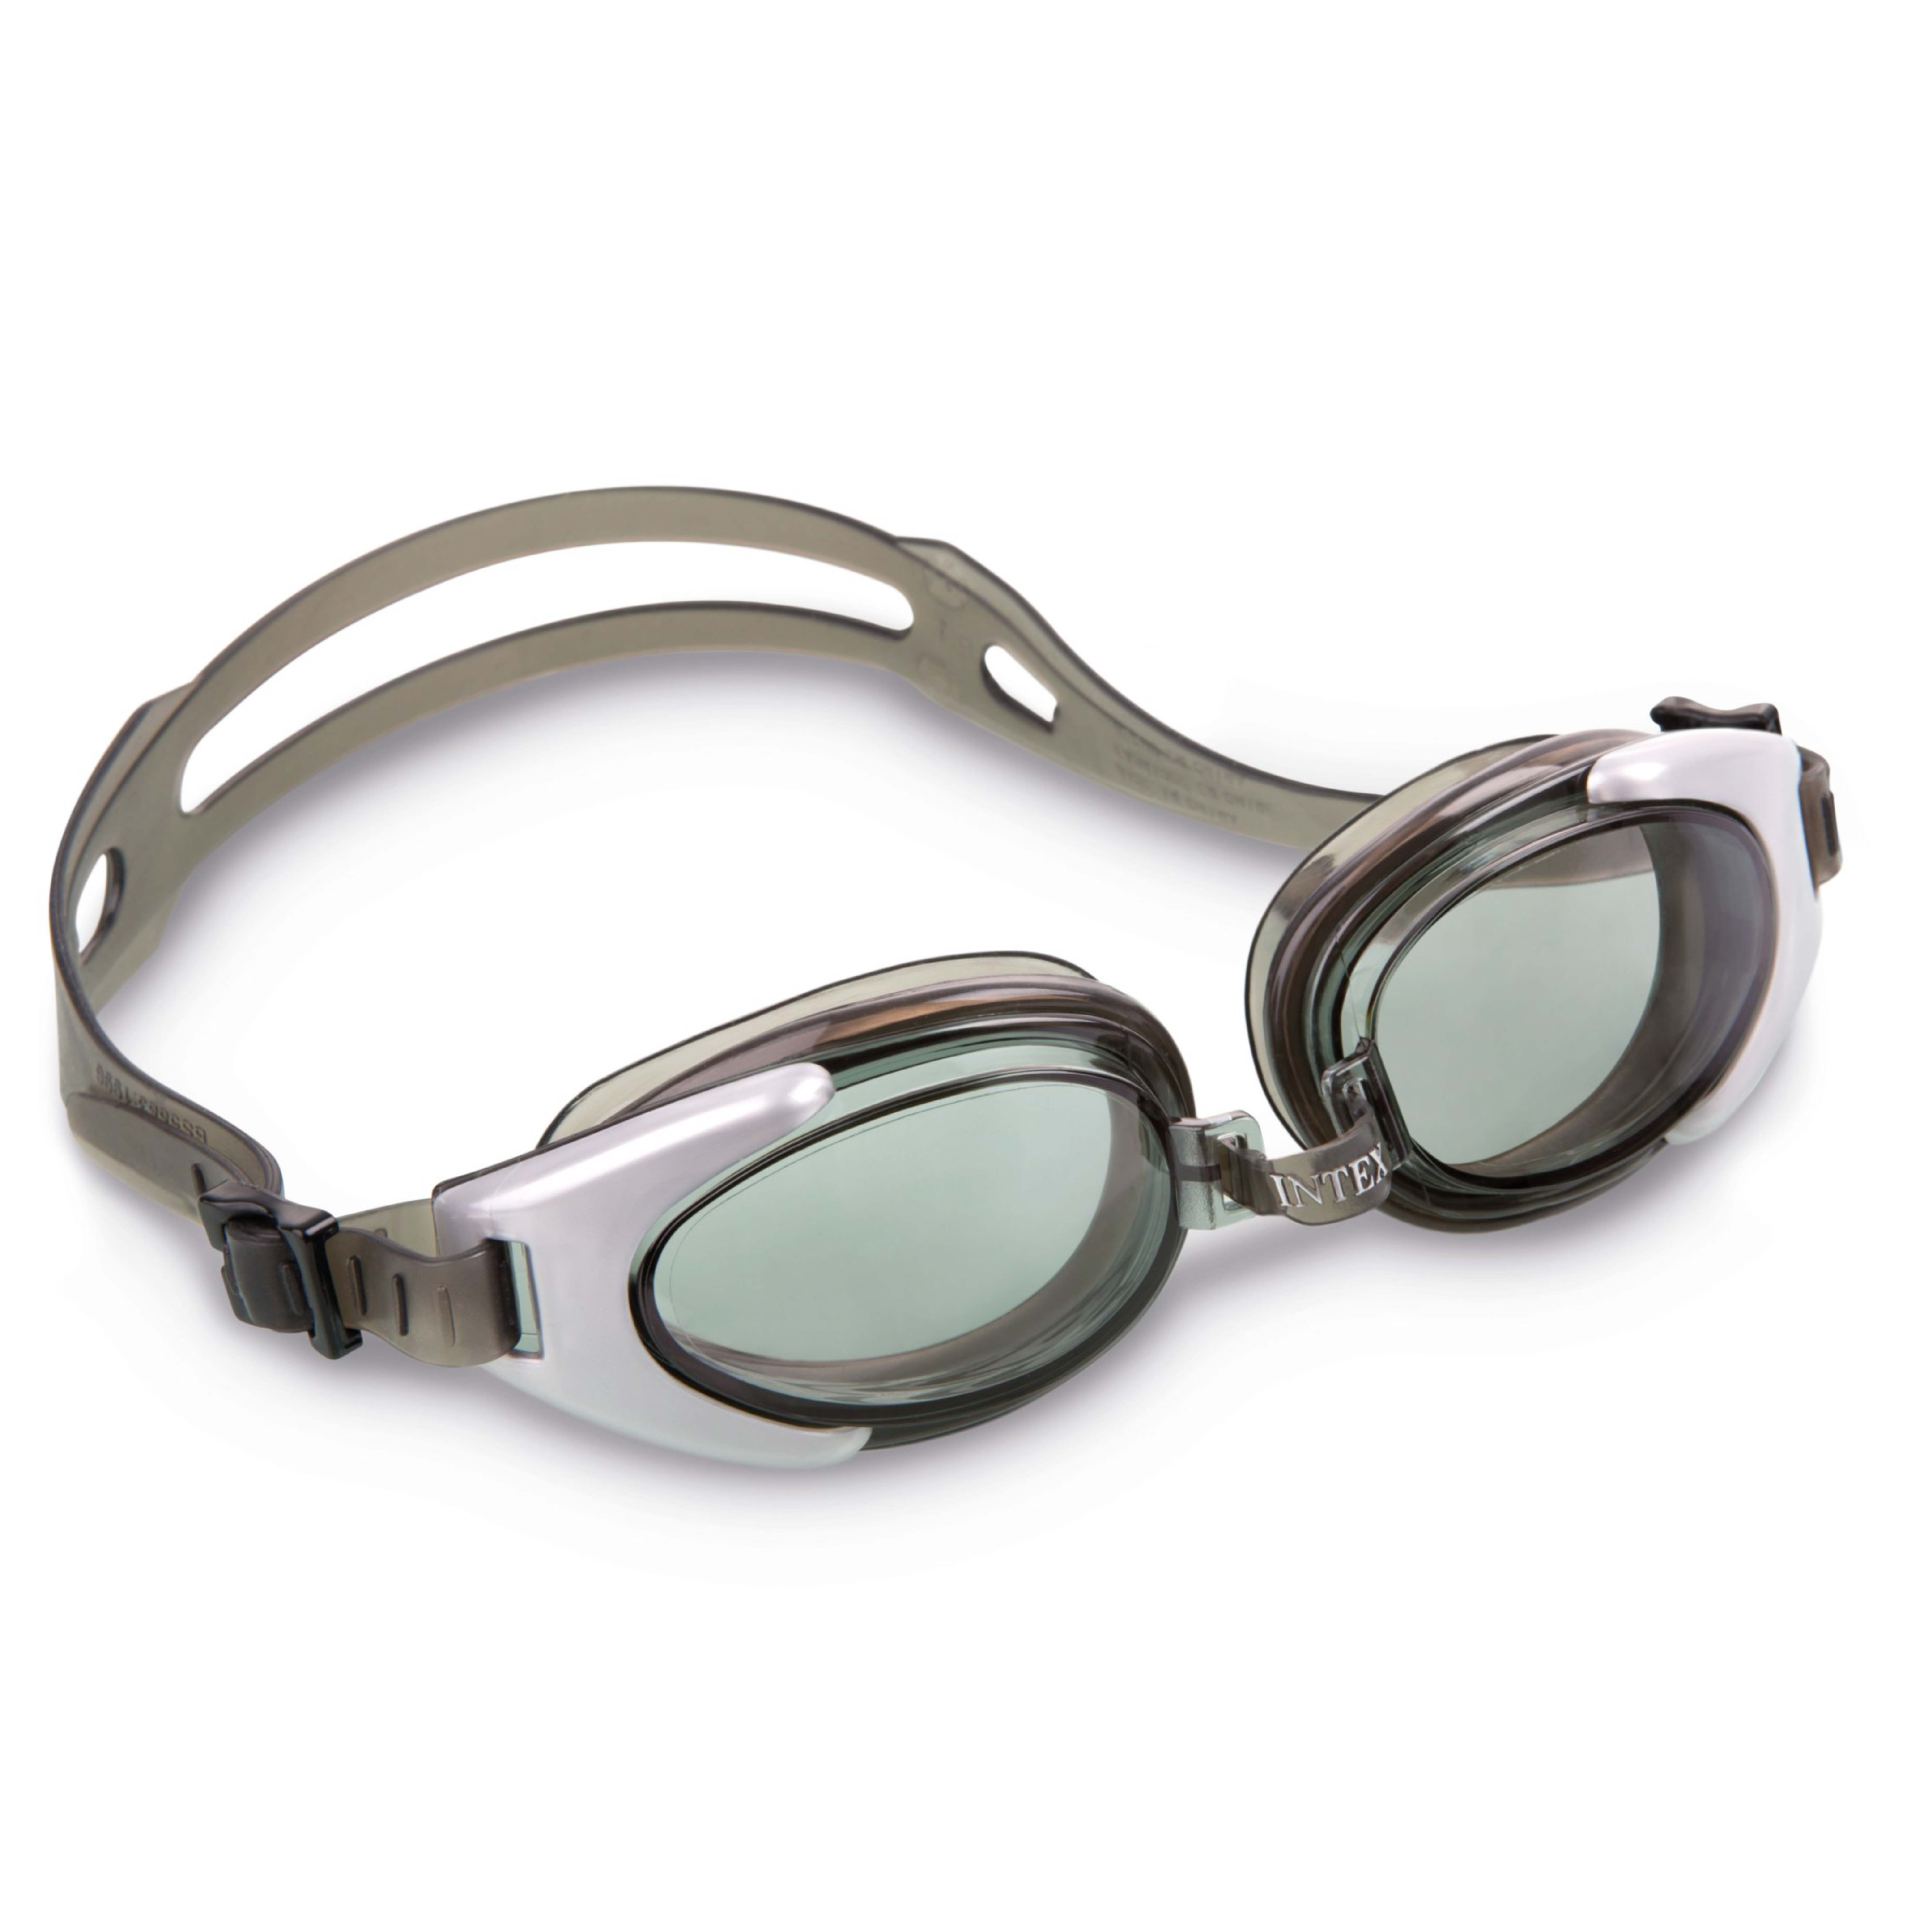 Intex water sport goggles zwart en wit